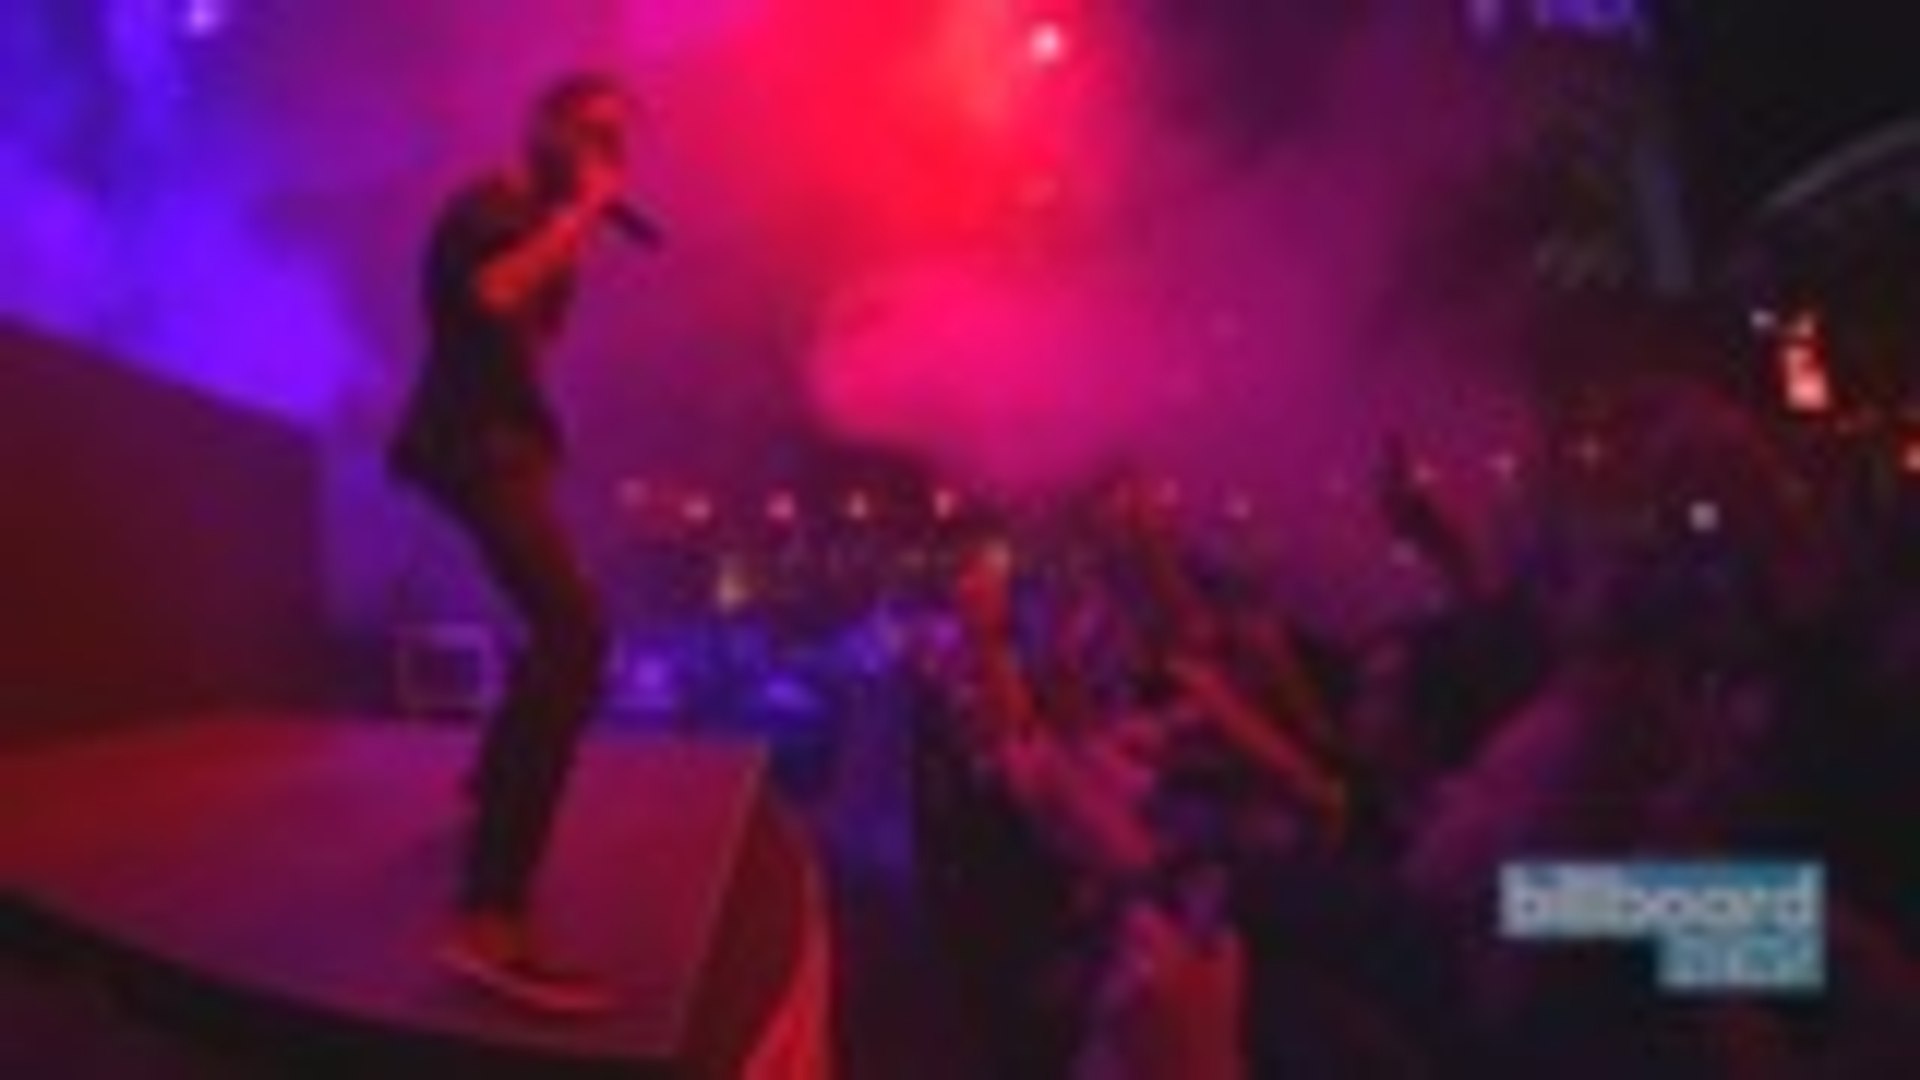 Rage Against The Machine, Travis Scott & Frank Ocean to Headline Coachella 2020 | Billboard News